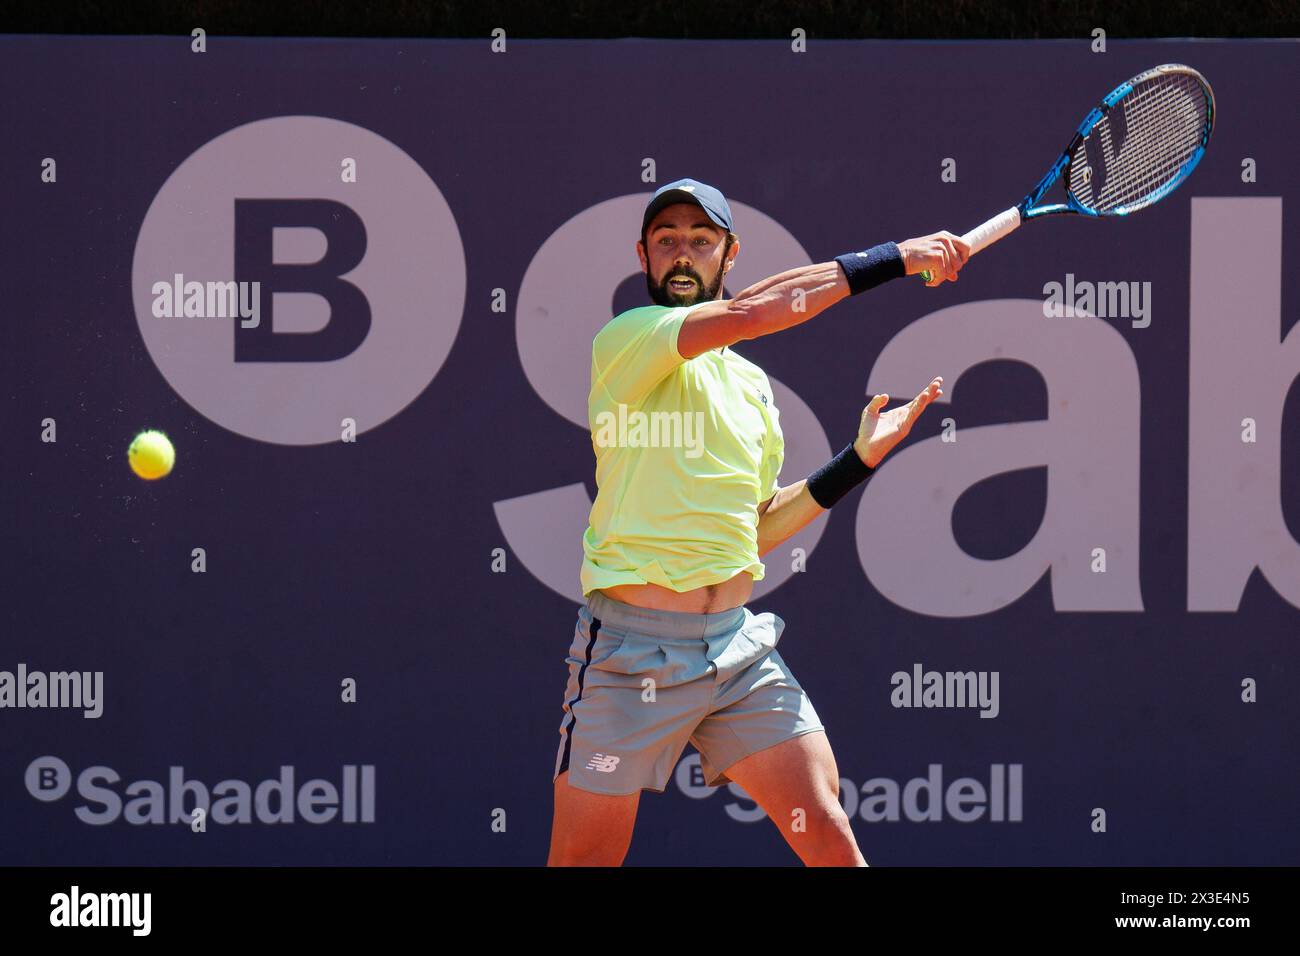 Barcelone, Espagne. 17 avril 2024. Jordan Thompson en action lors du tournoi de tennis Barcelona Open Banc de Sabadell au Reial Club de Tennis B. Banque D'Images